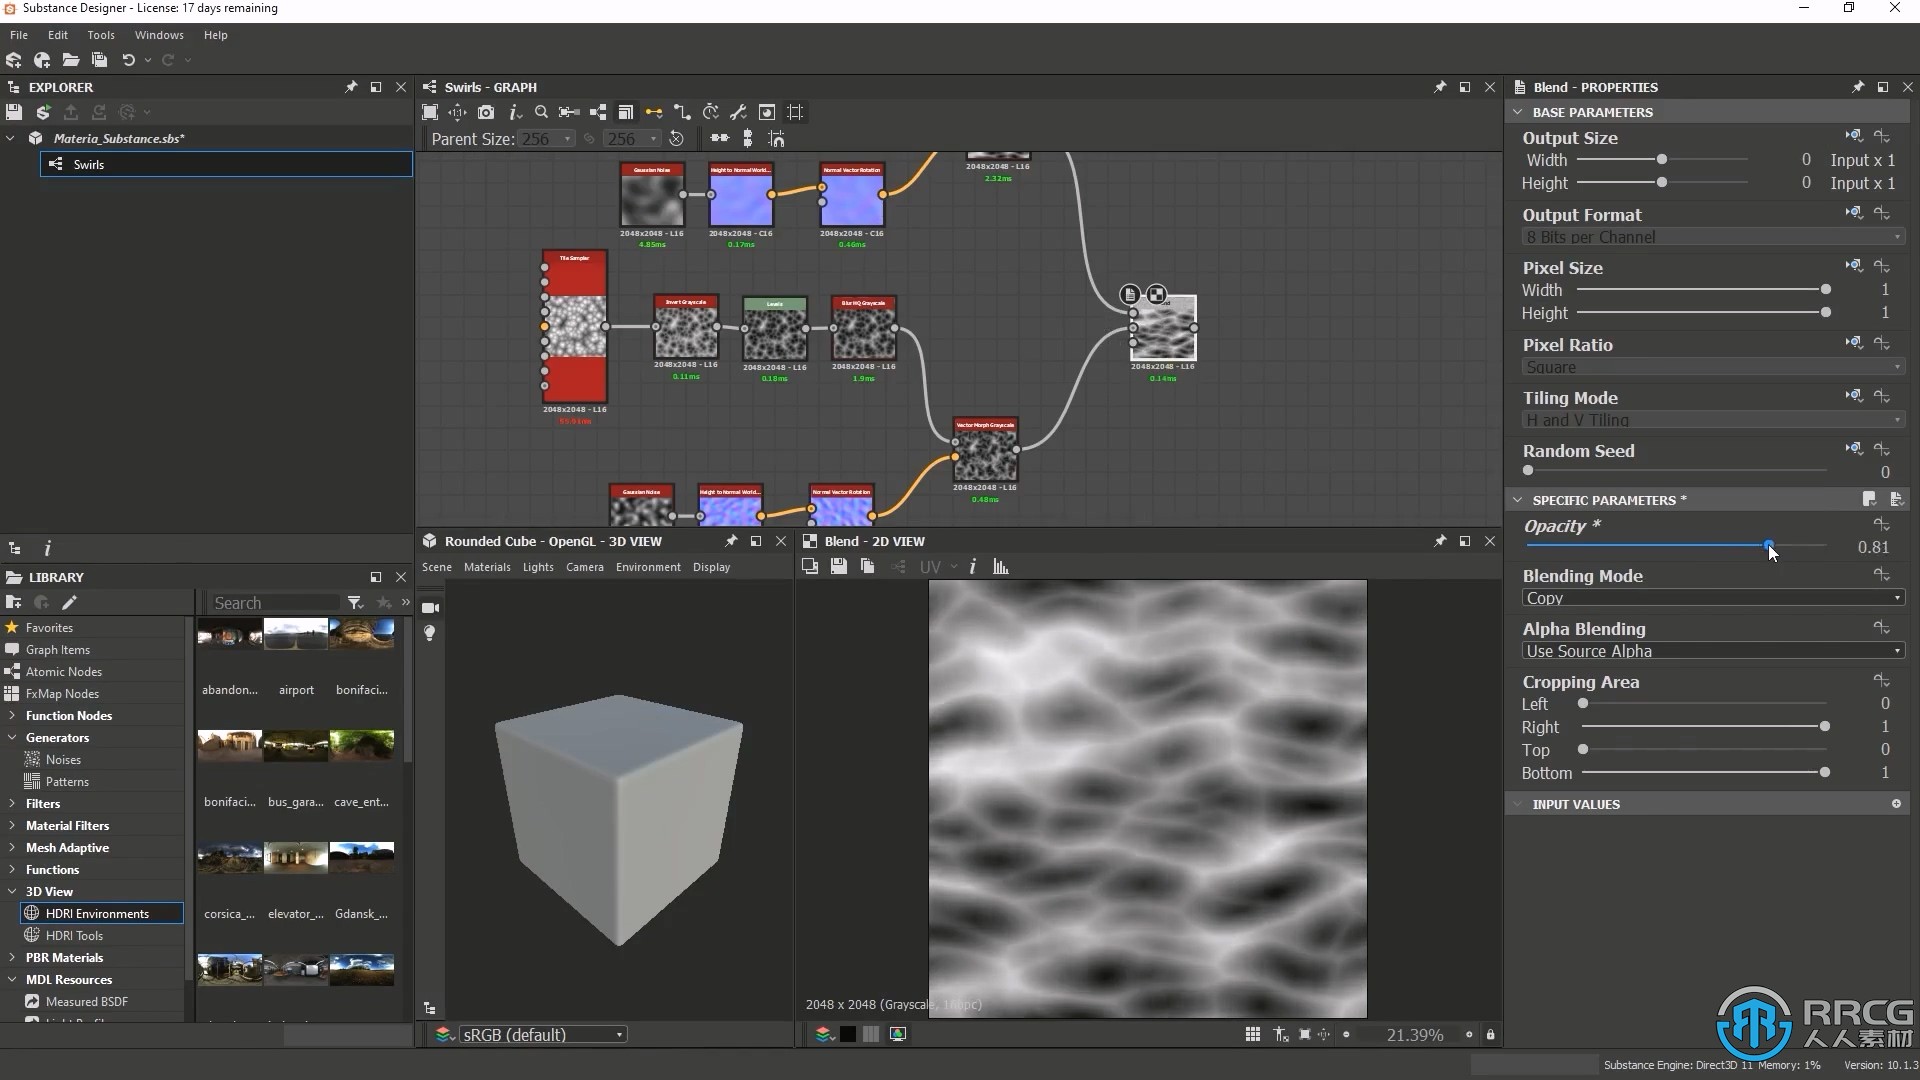 UE4虚幻引擎高级视觉特效技术训练视频教程